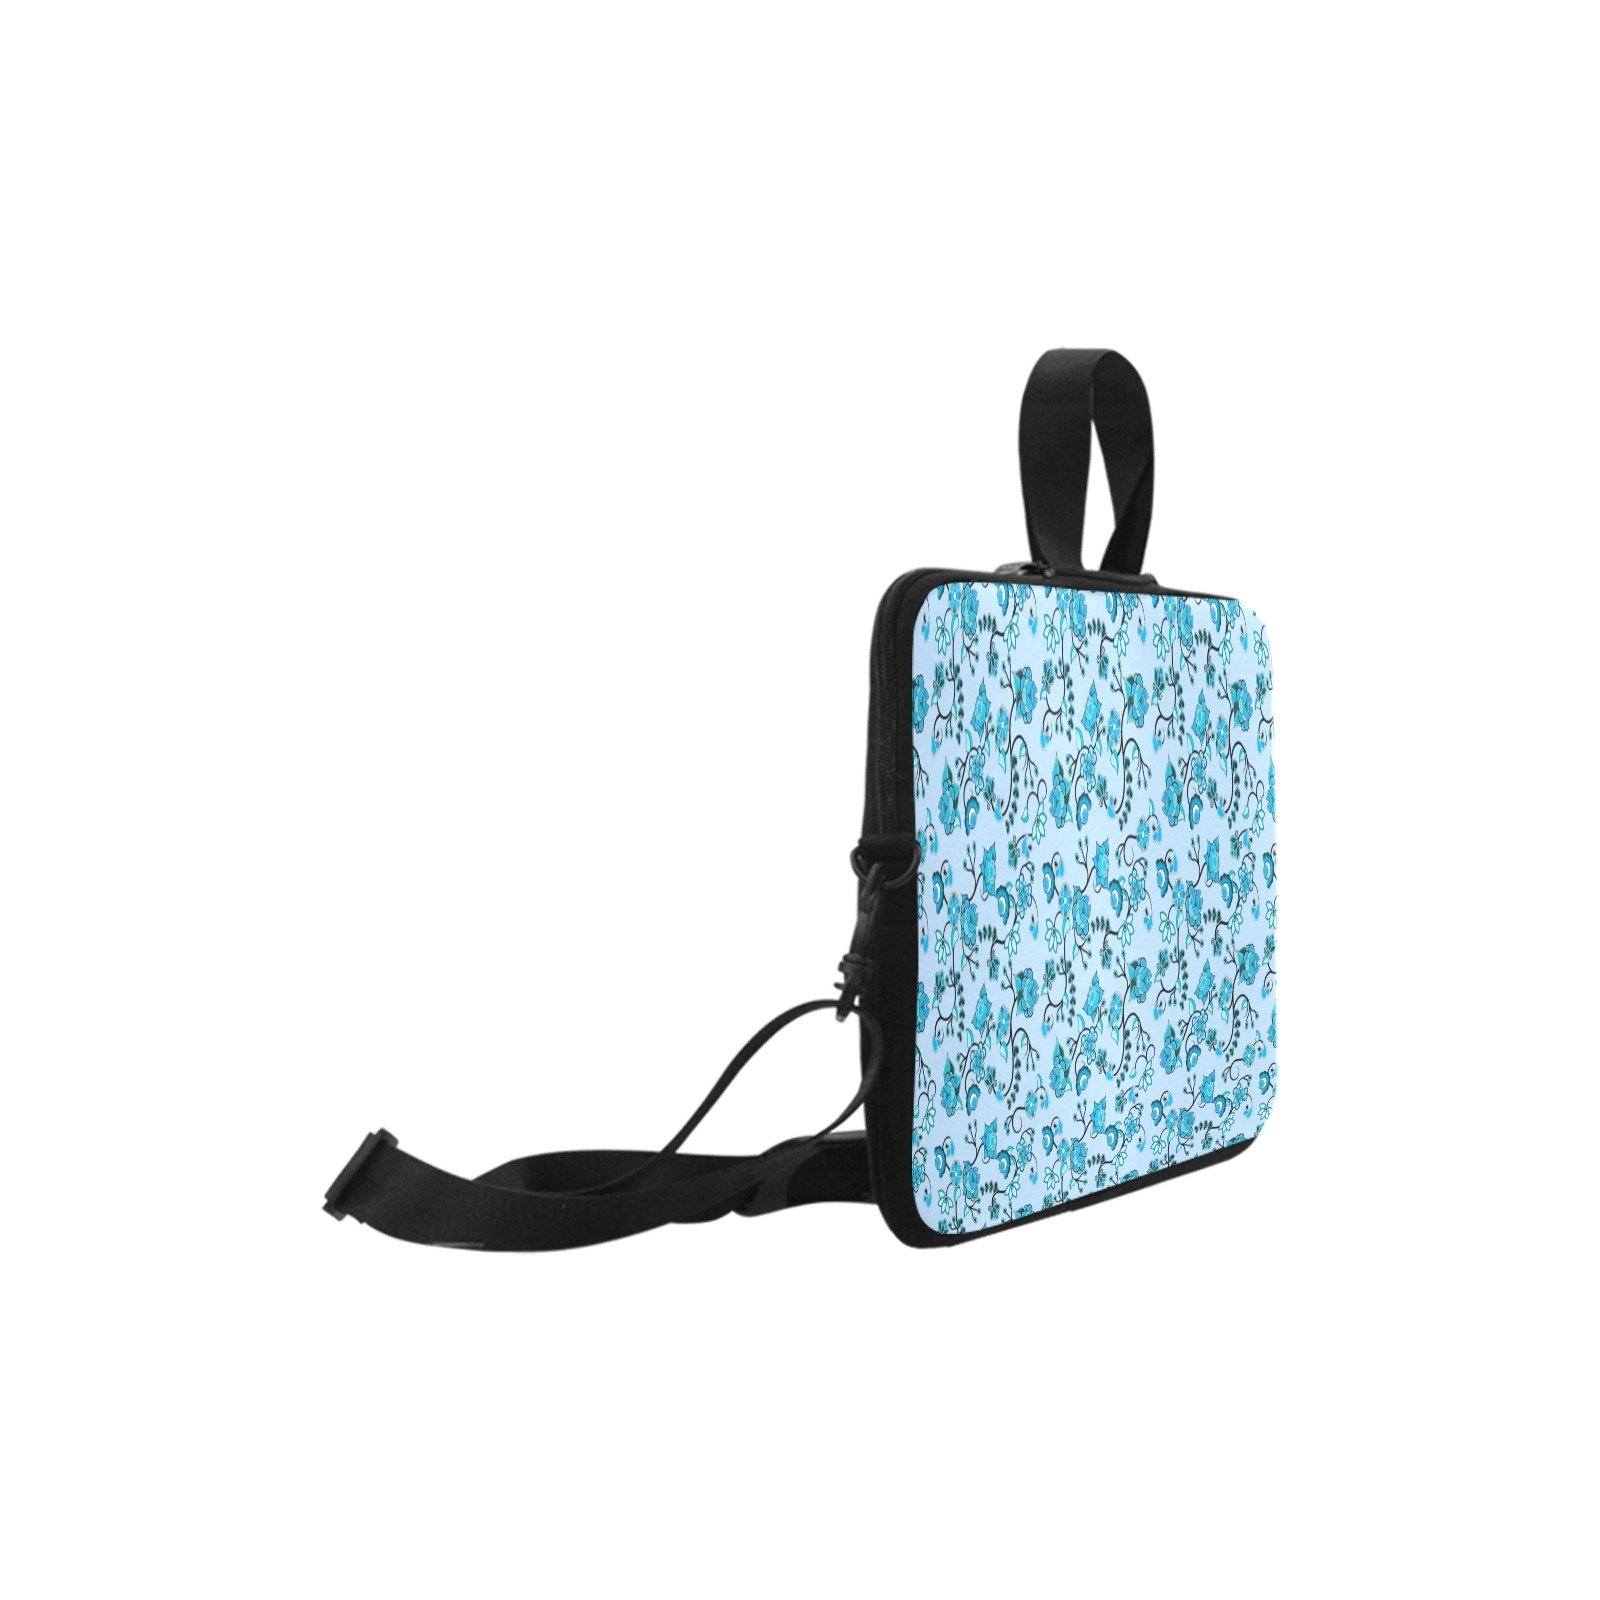 Blue Floral Amour Laptop Handbags 15" Laptop Handbags 15" e-joyer 